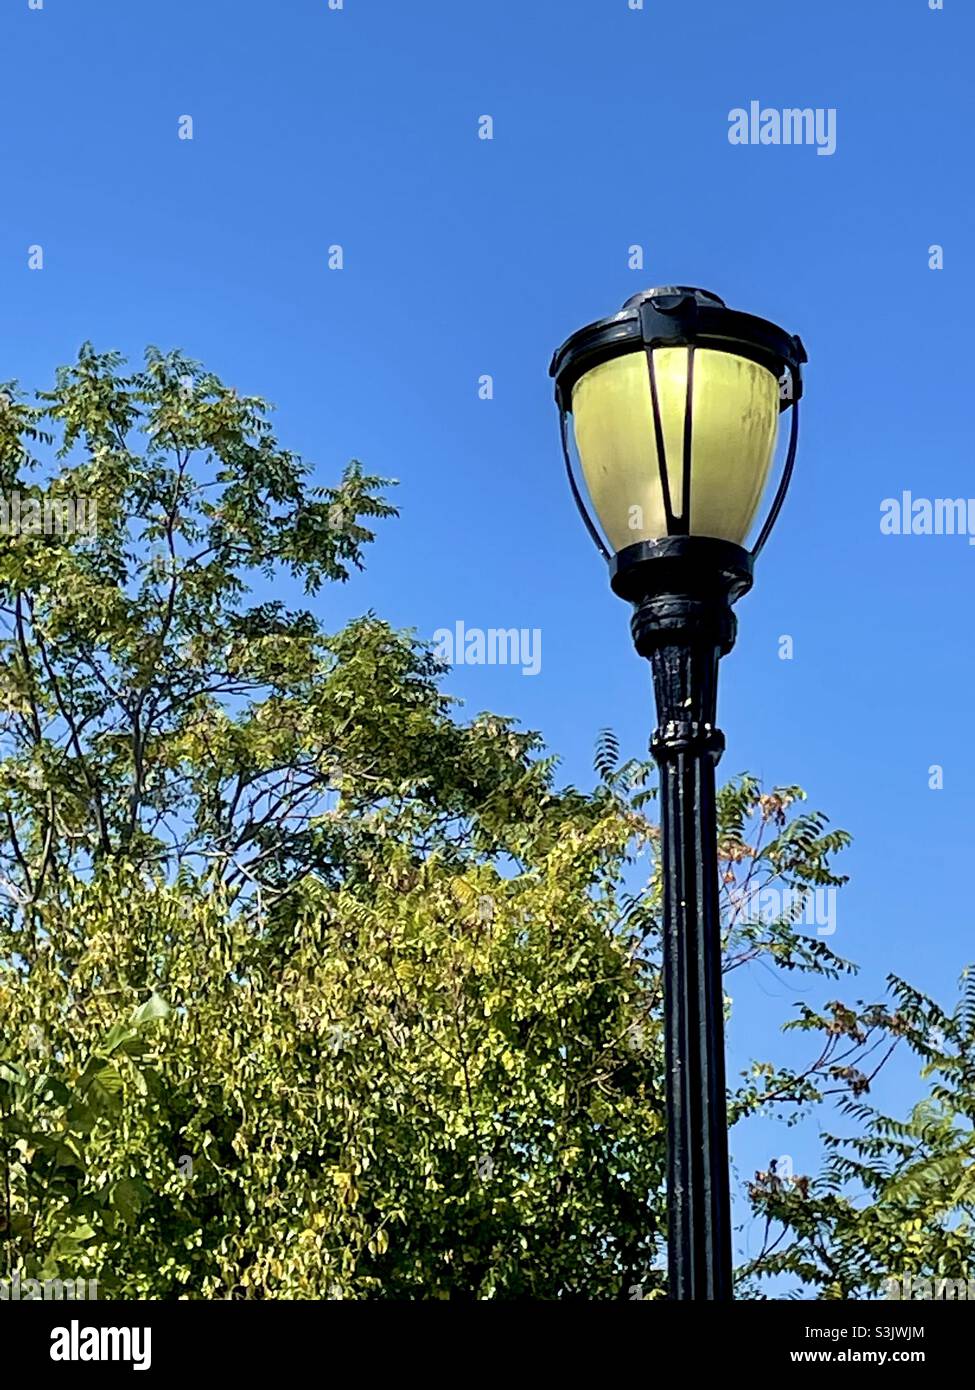 Postes de luz decoraciones fotografías e imágenes de alta resolución - Alamy